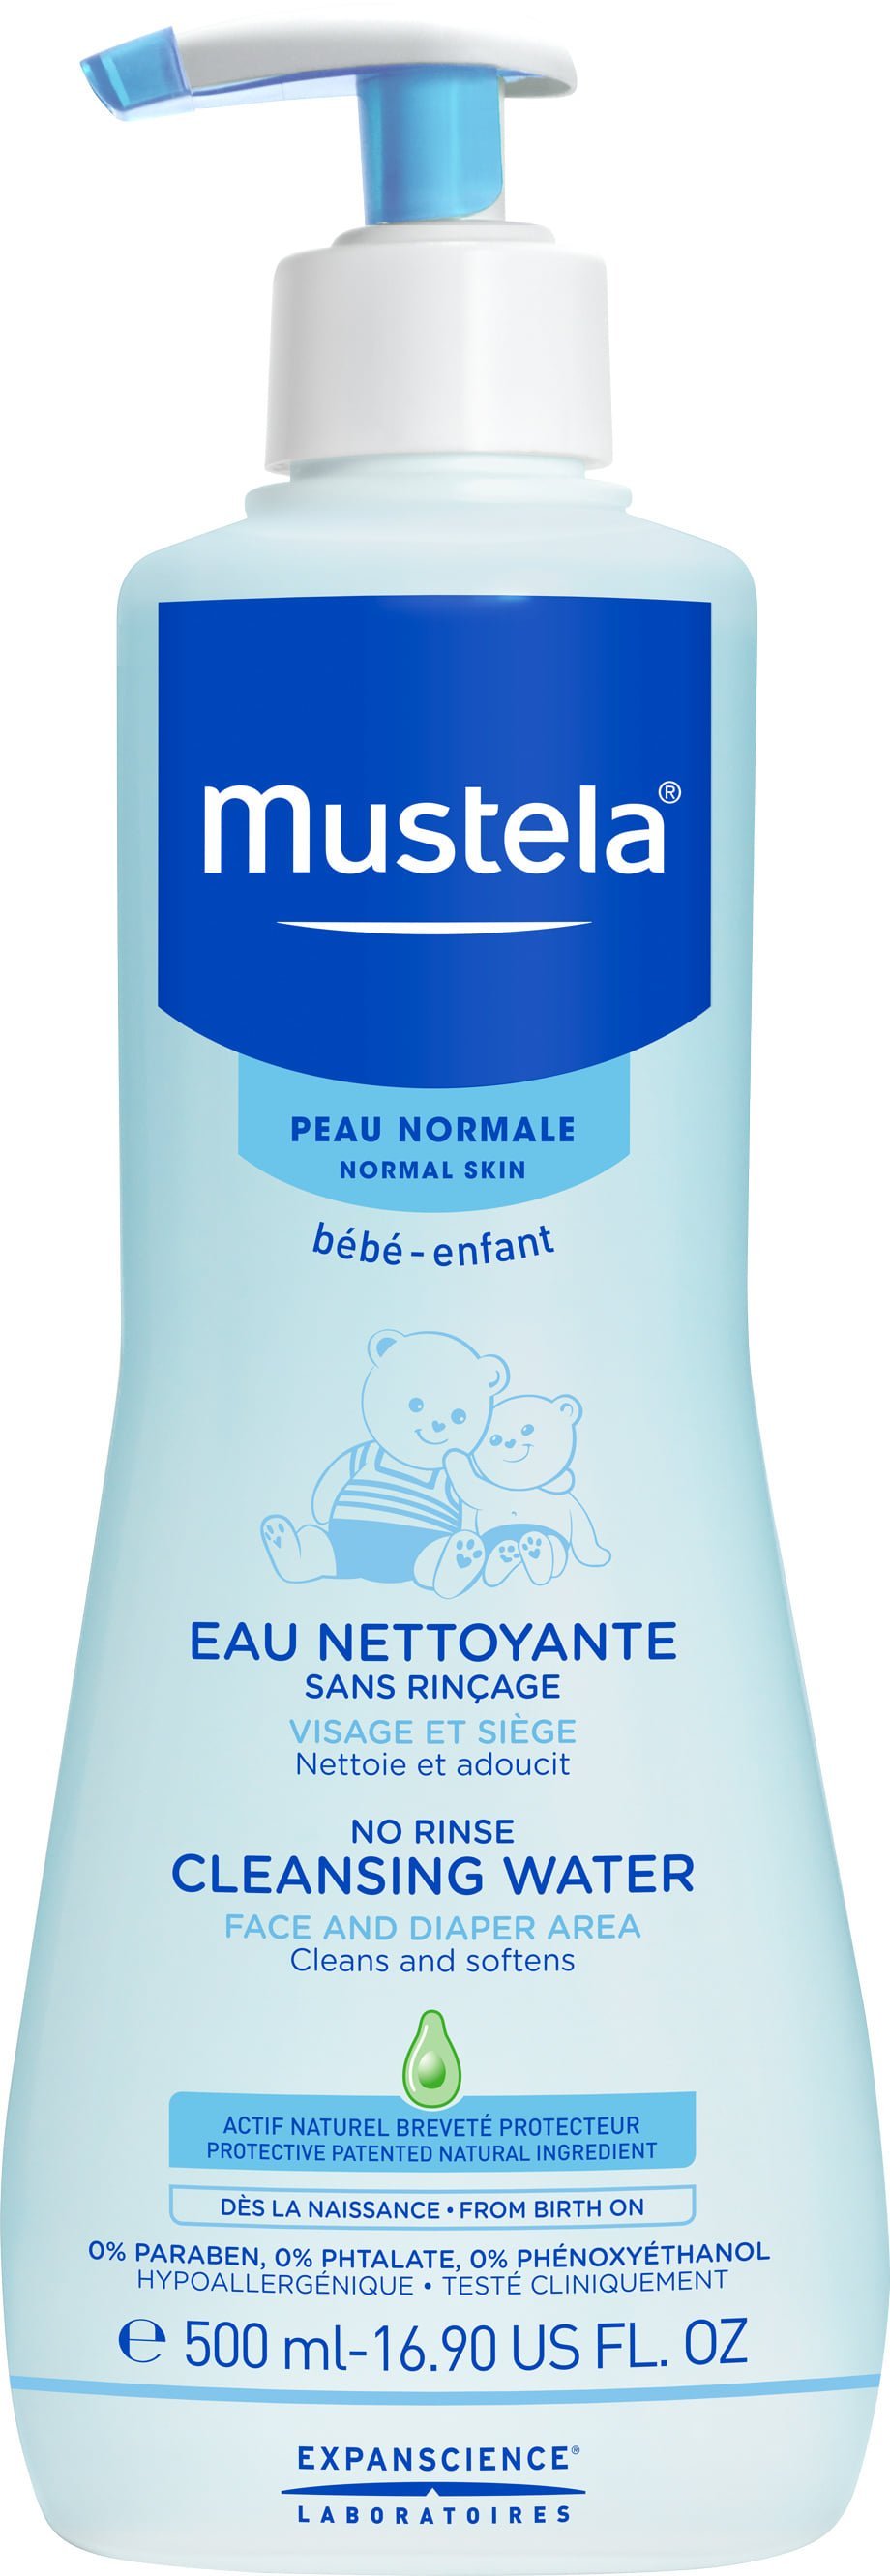 mustela baby cleansing water